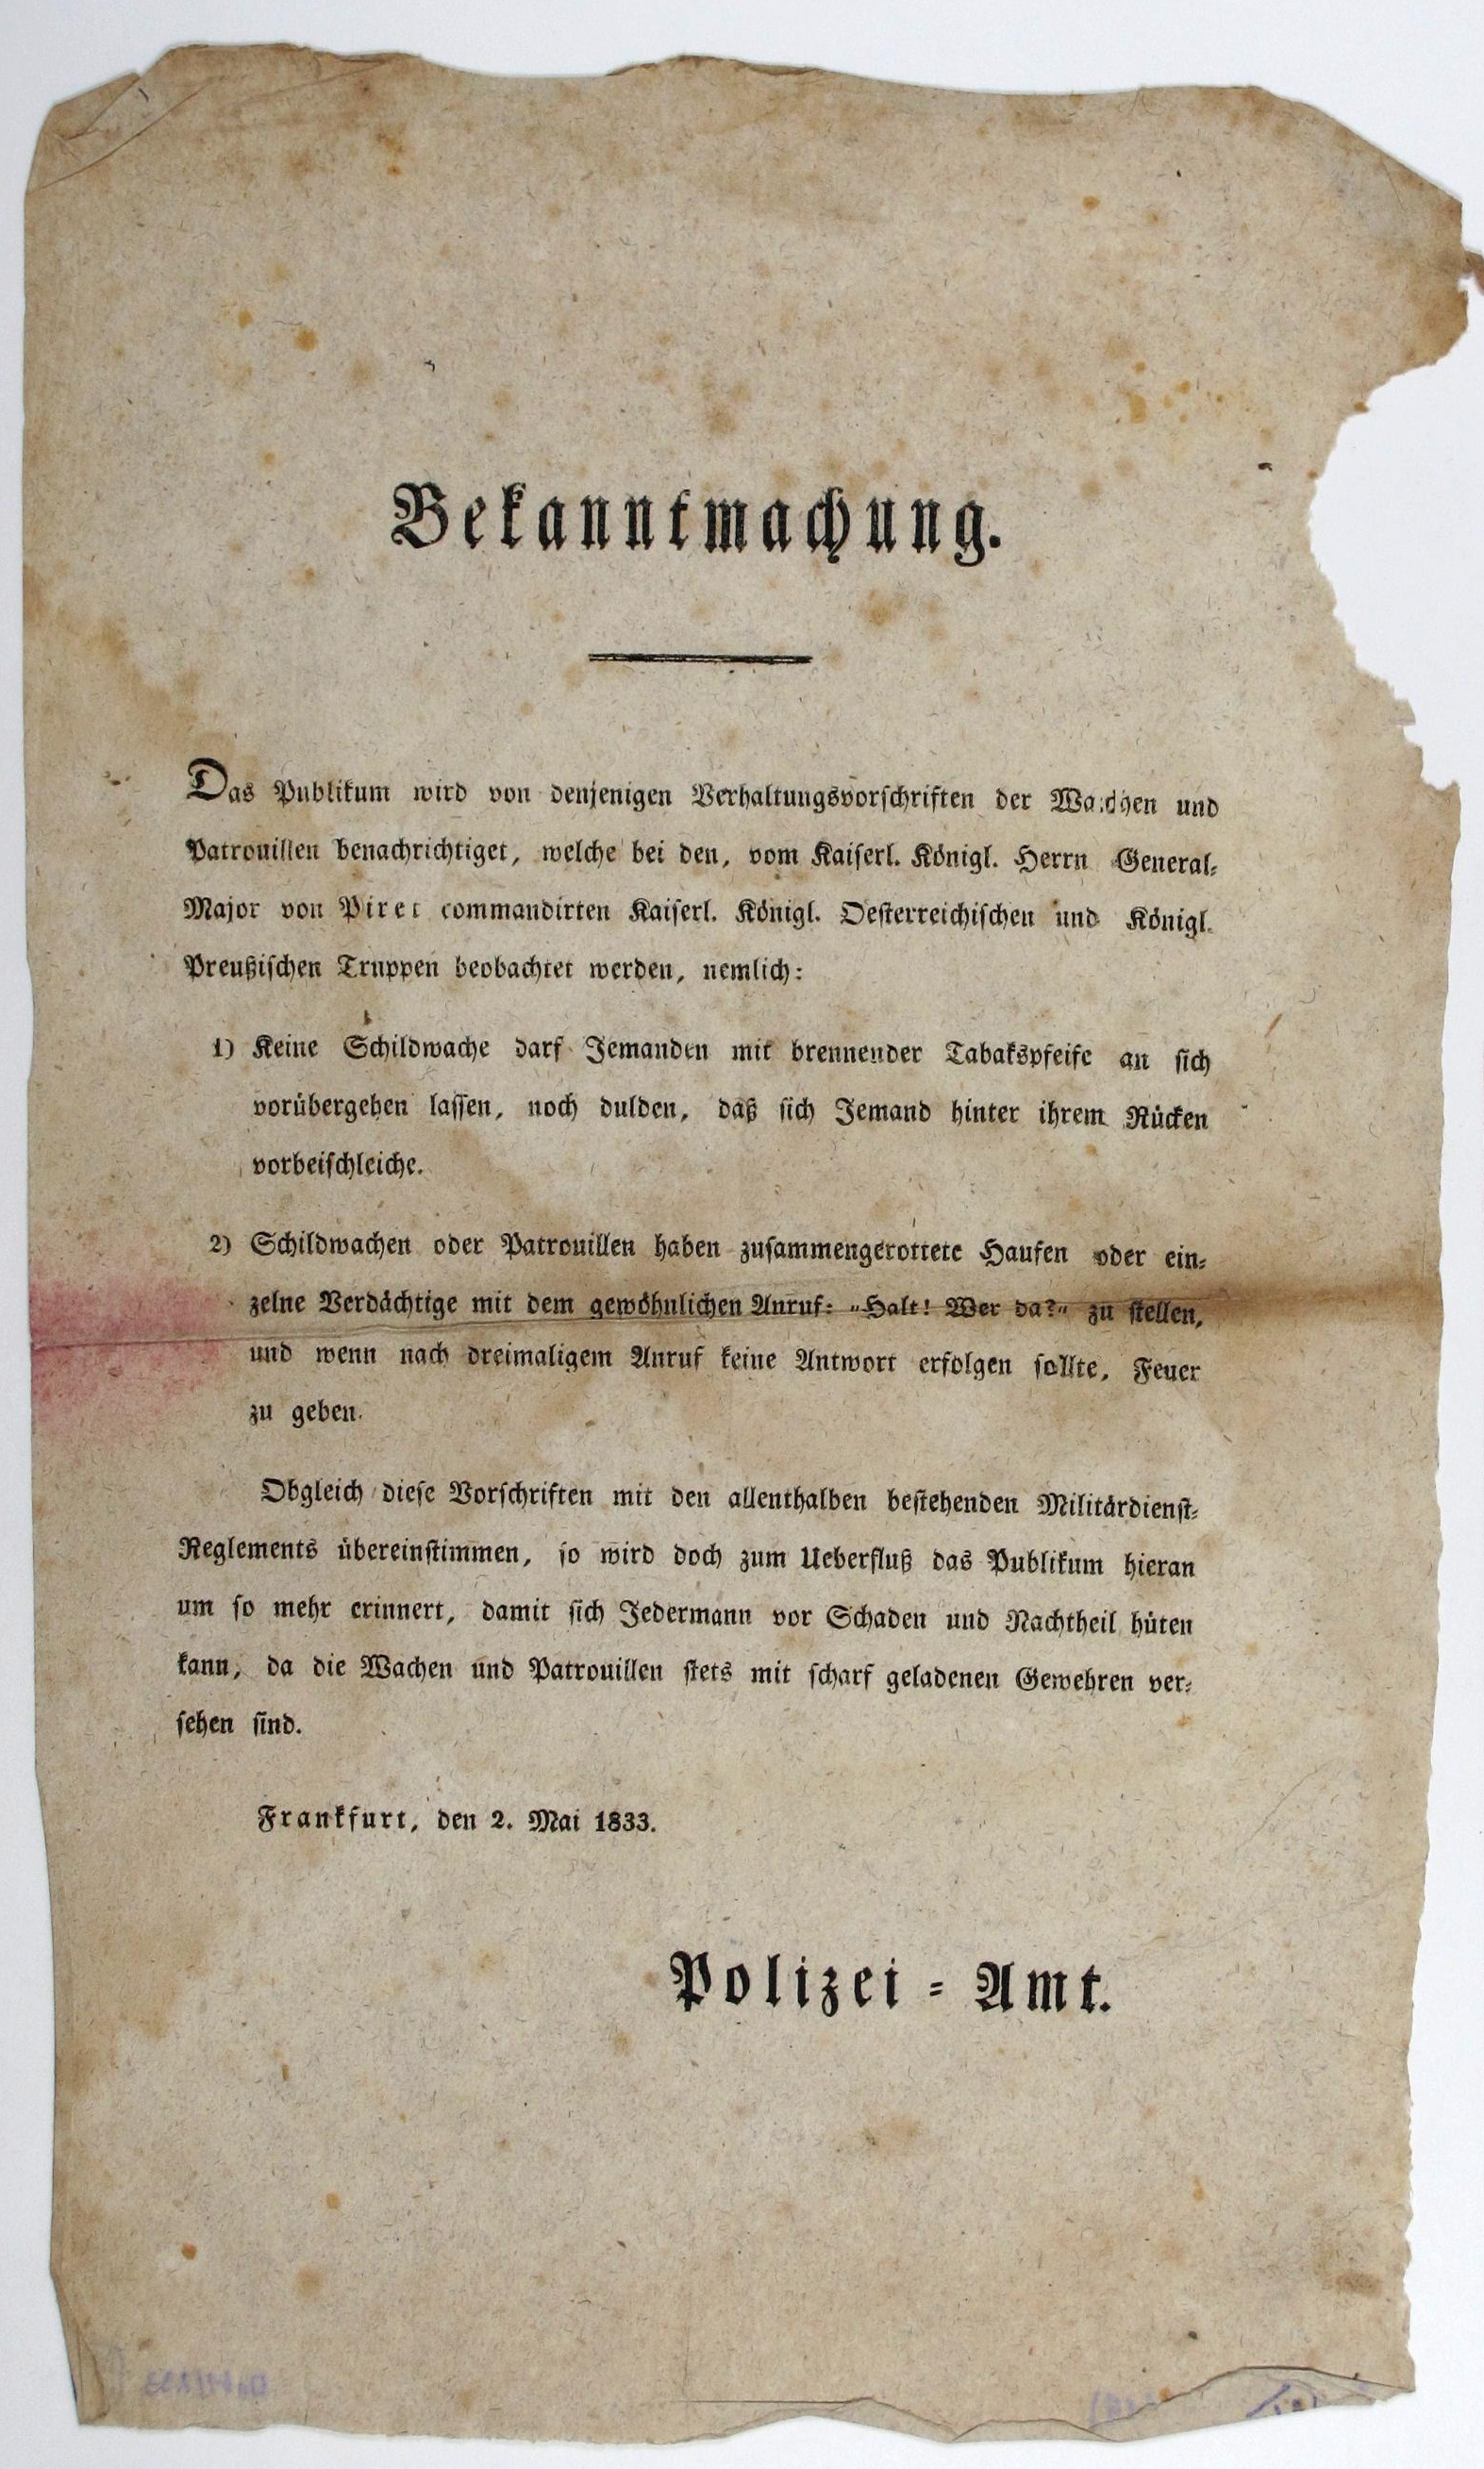 Dokumente: Bekanntmachung des Polizeiamtes Frankfurt, 1833